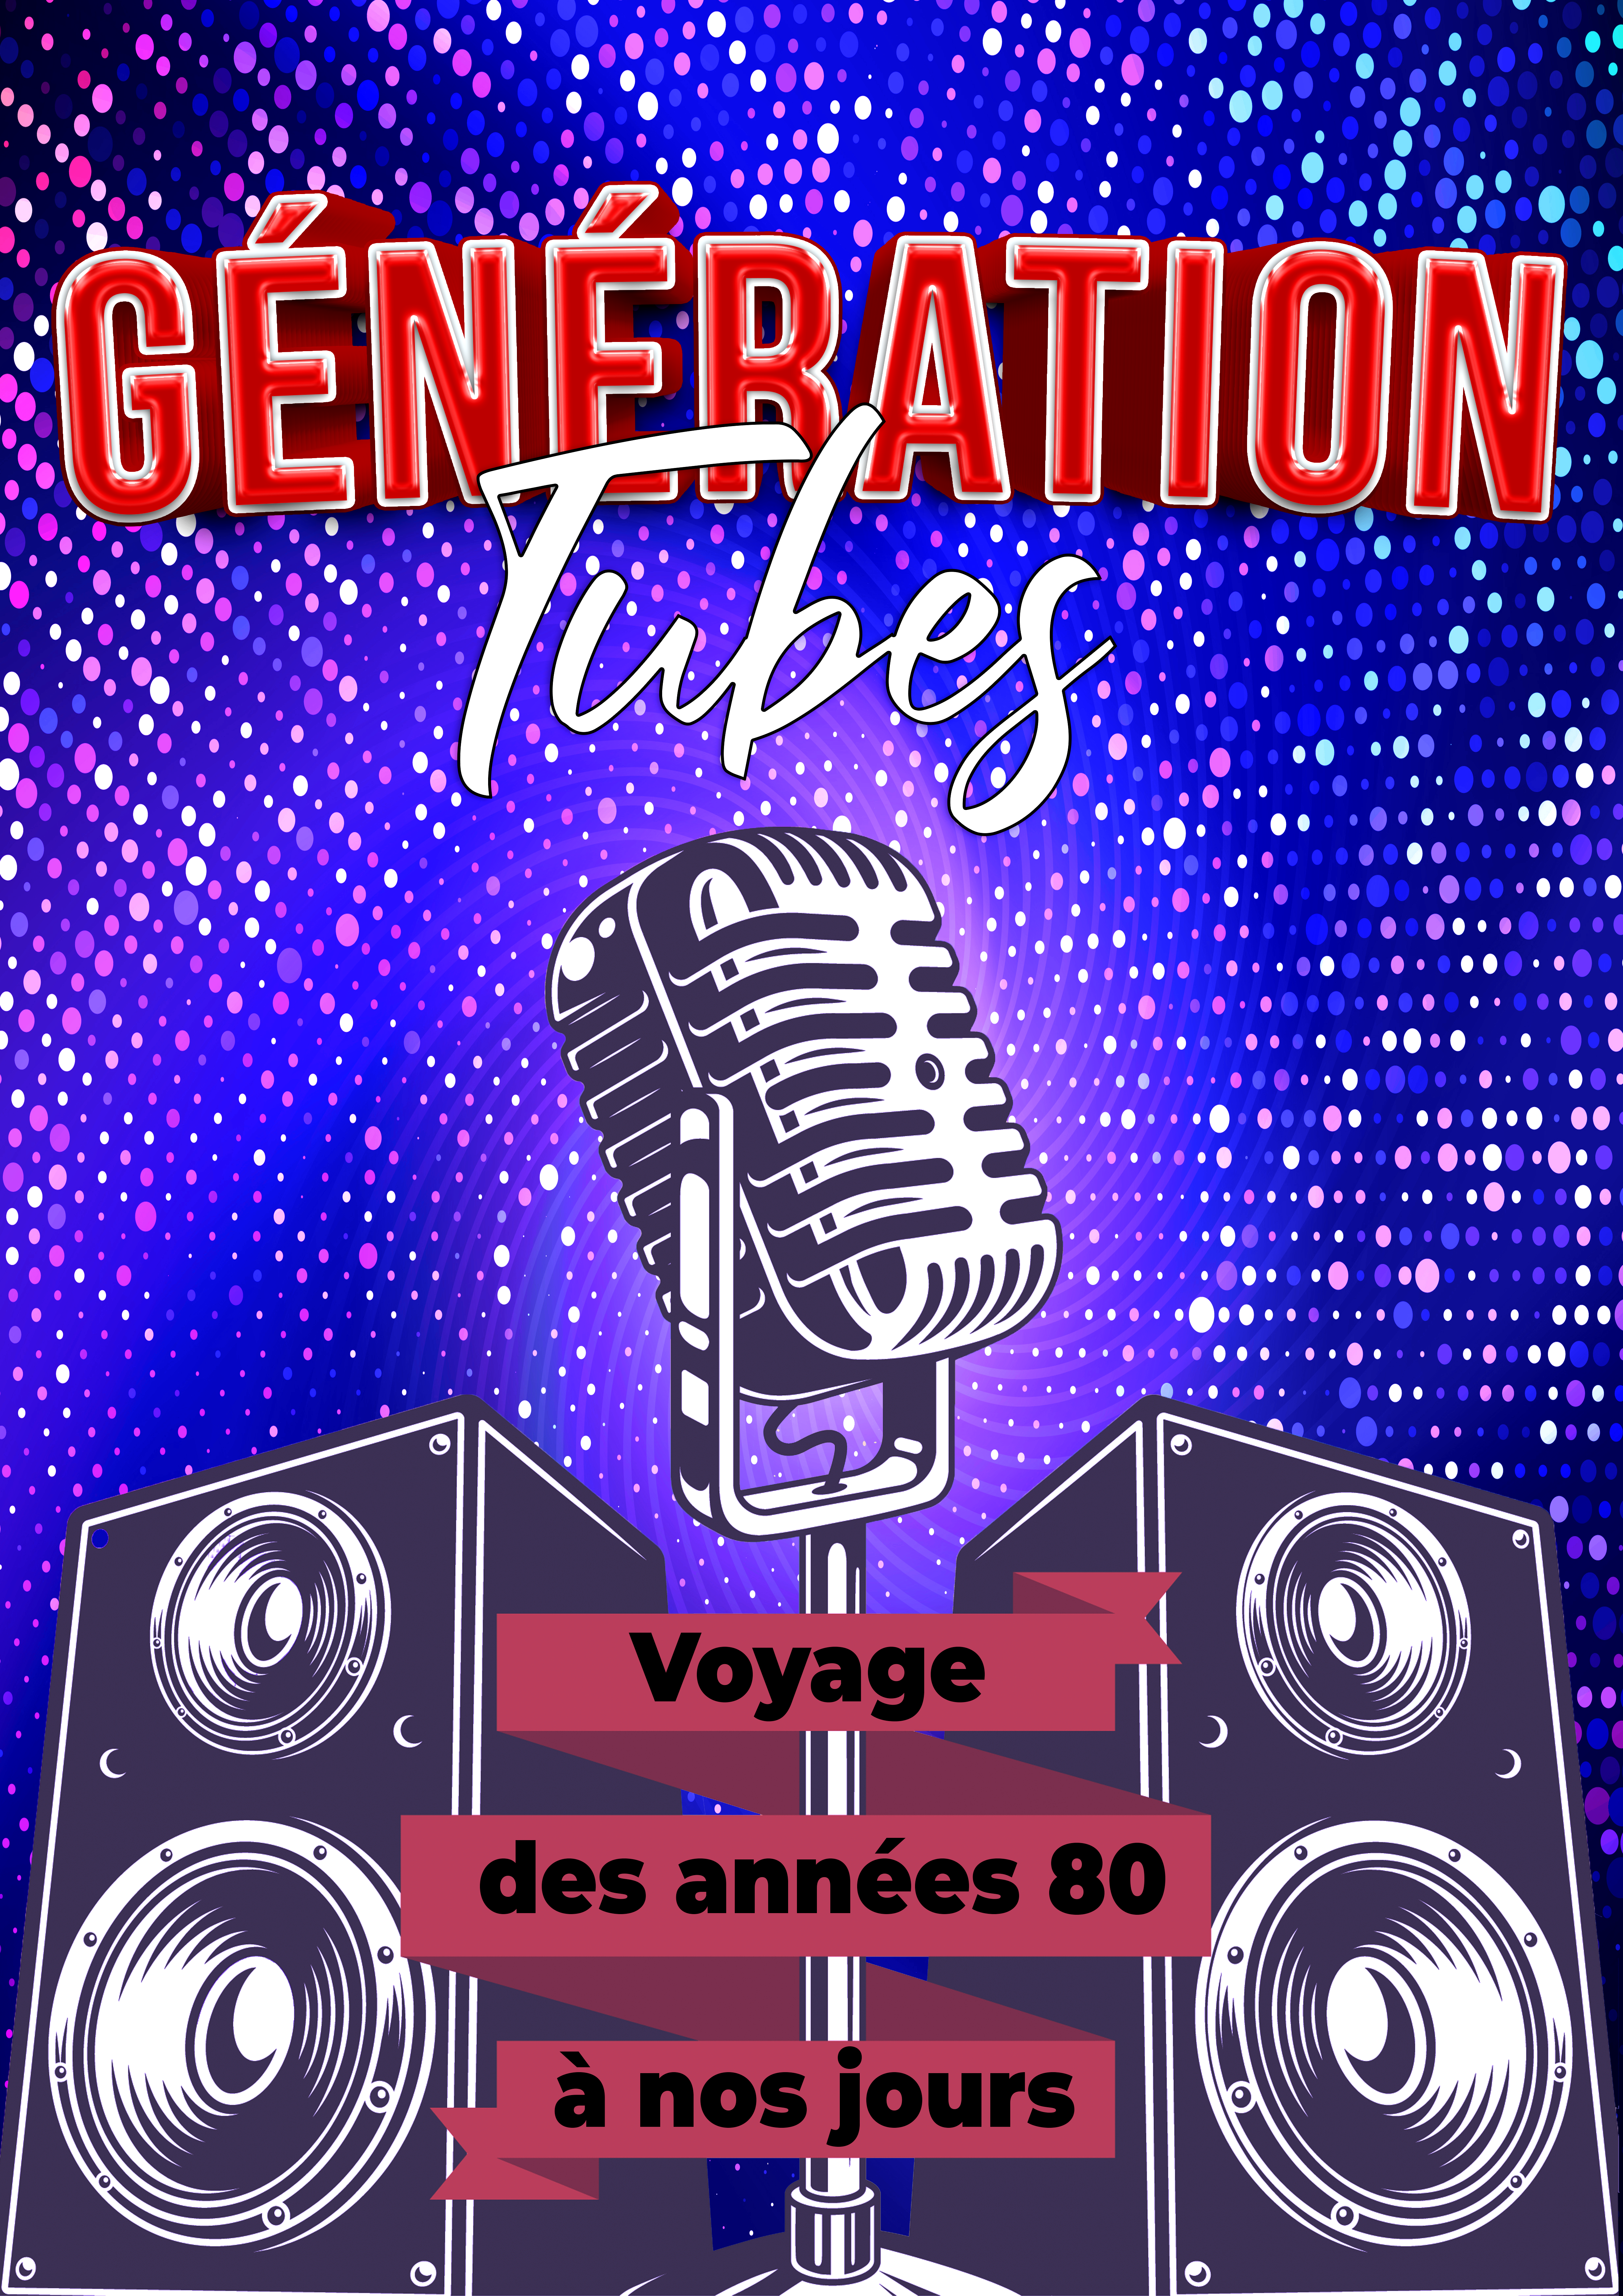 Claude Gérard Production présente annee 80 90 generation tubes